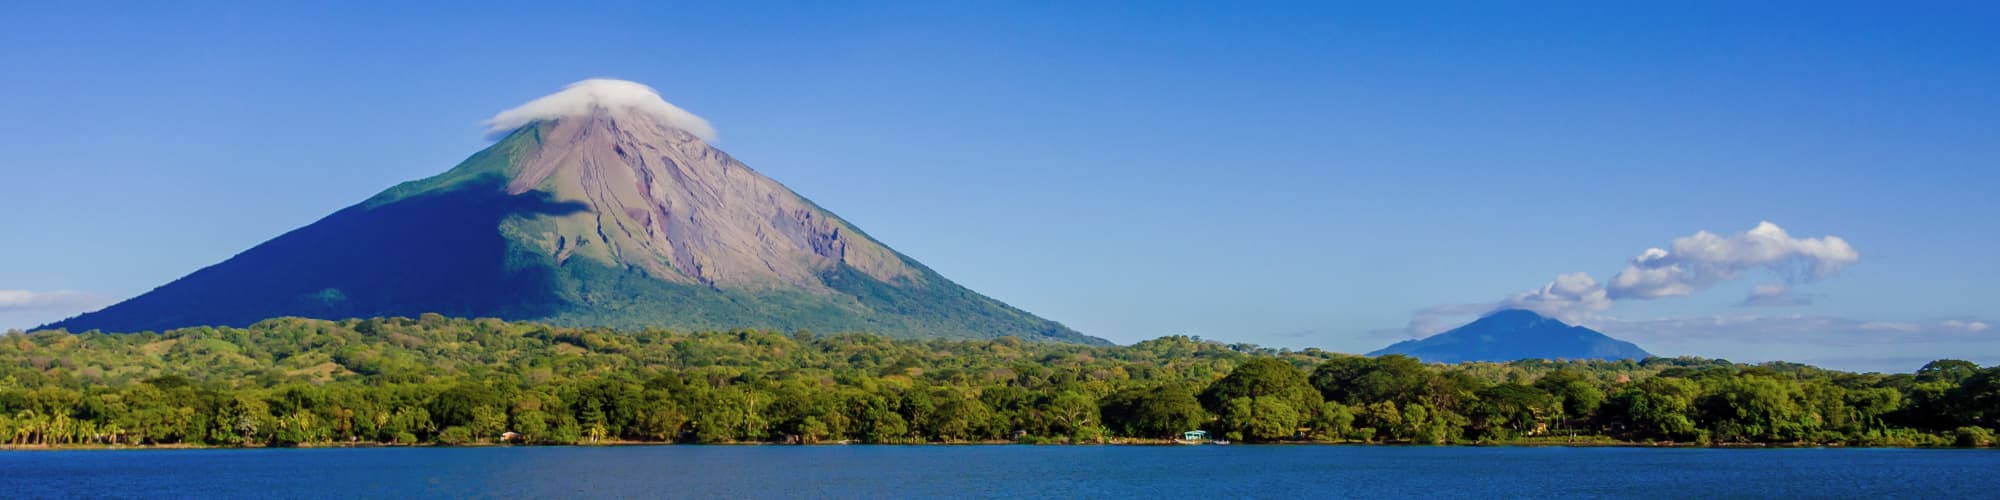 Découverte Nicaragua © SimonDannhauer